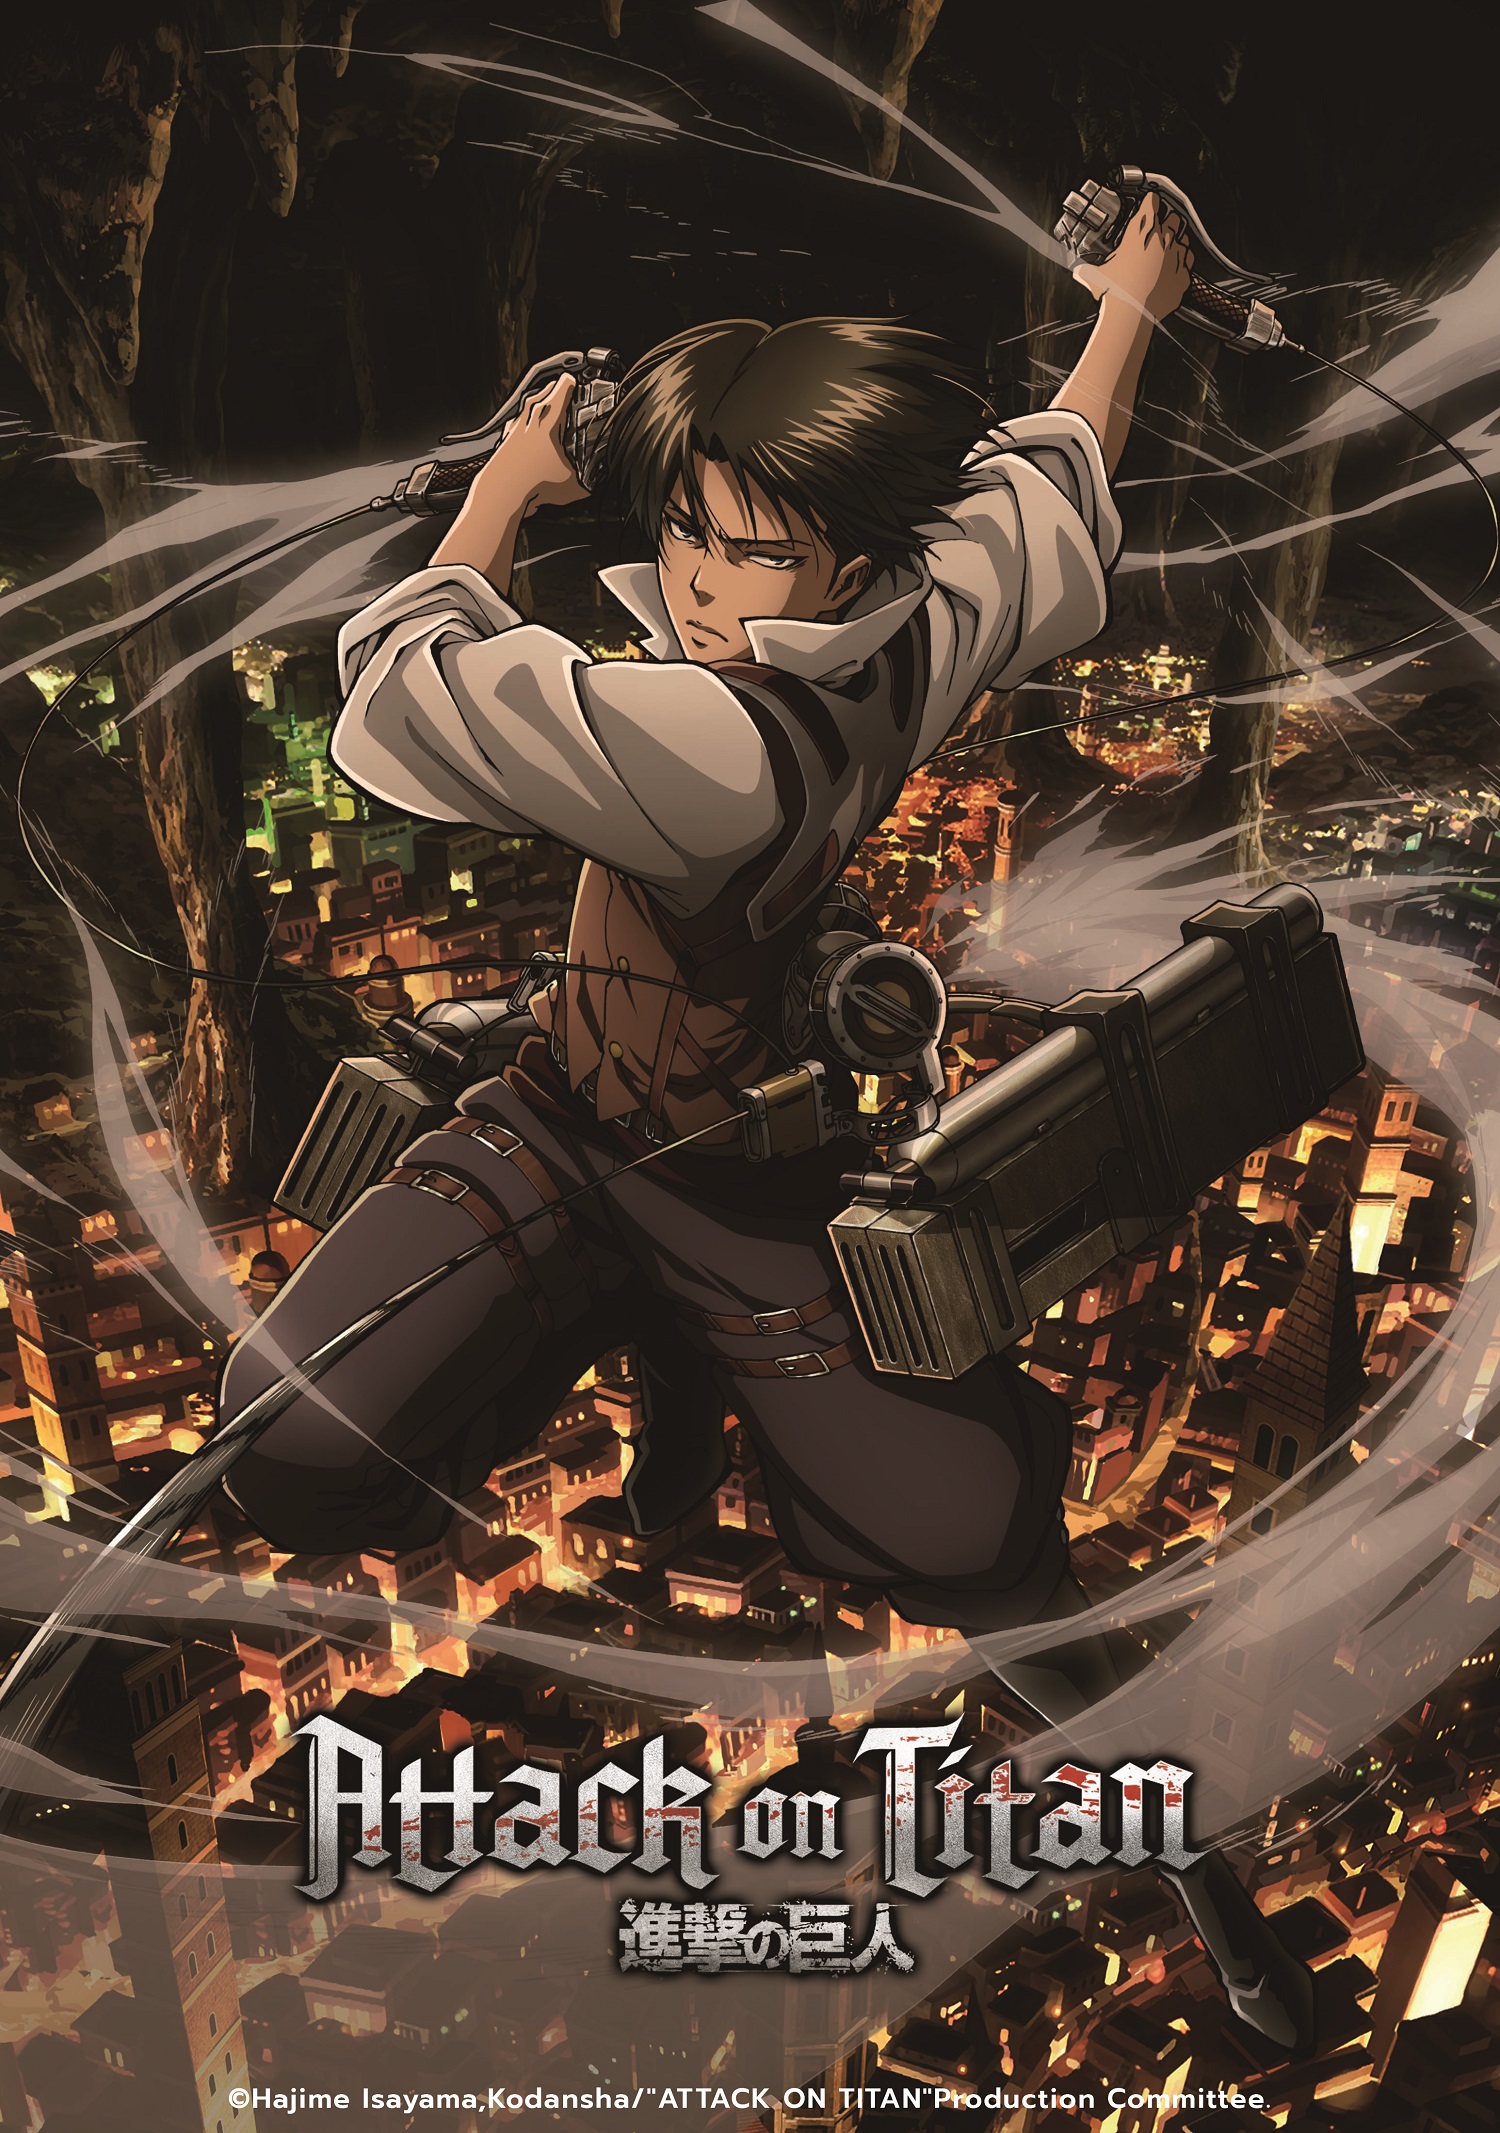 Funimation anuncia fim de Attack on Titan e mais animes para janeiro –  Tecnoblog